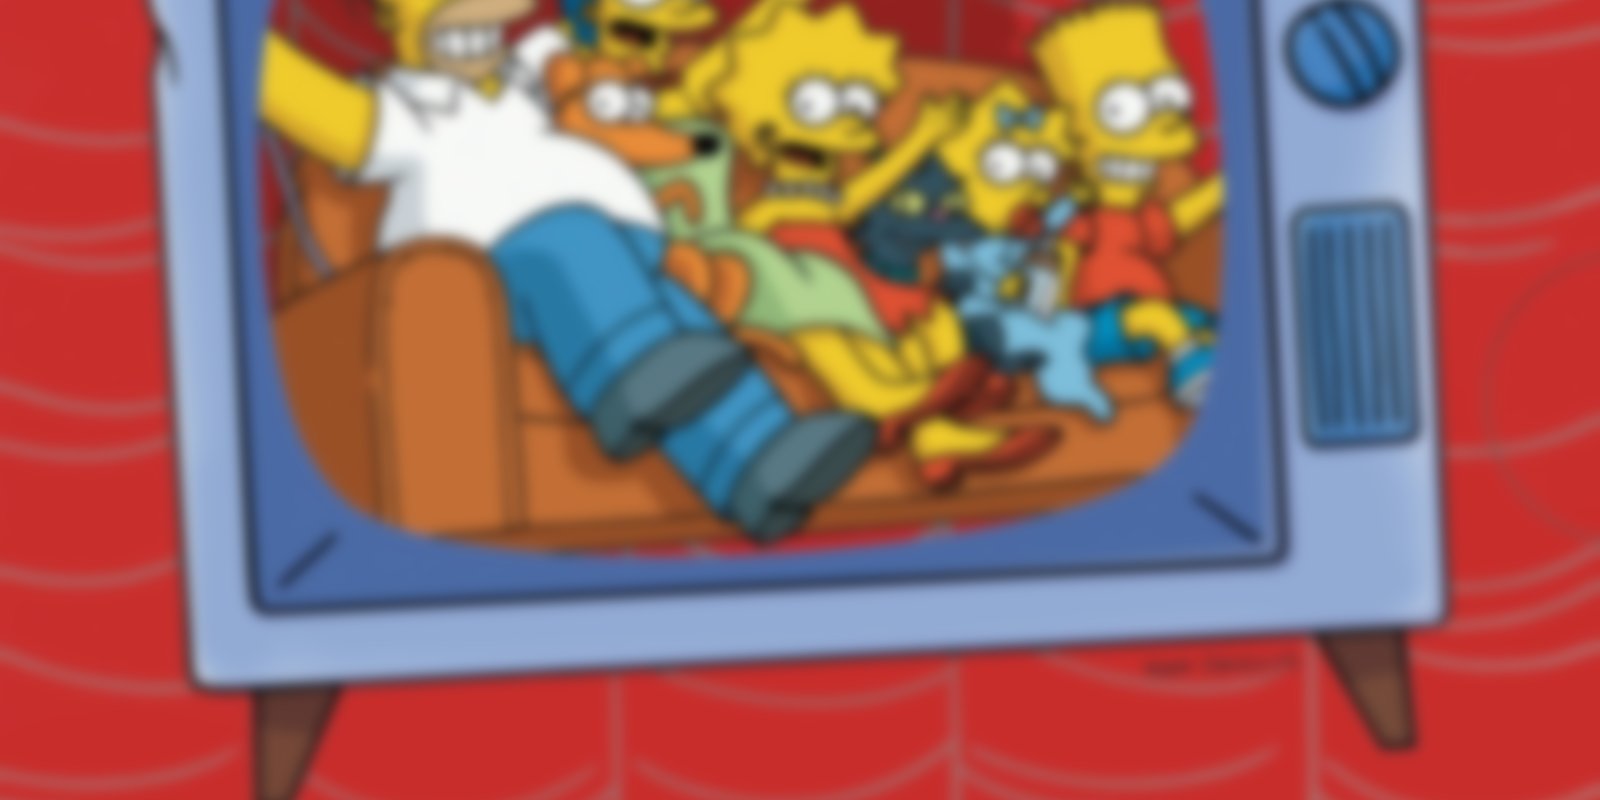 Die Simpsons - Staffel 5